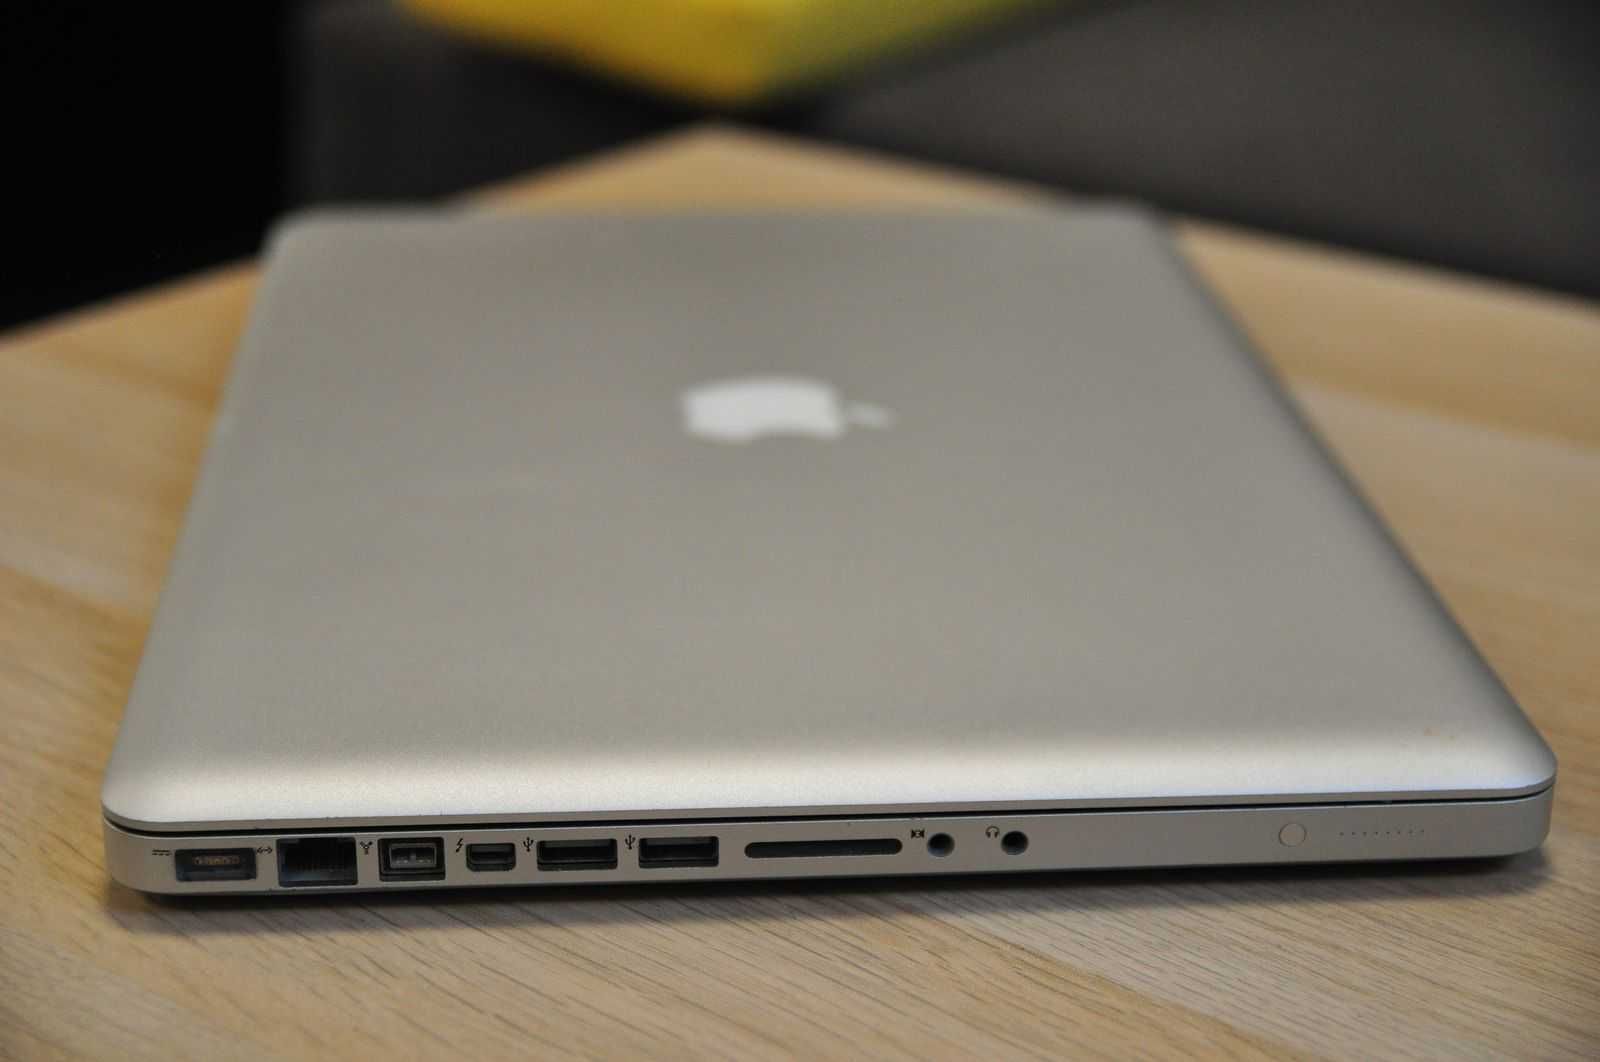 MacBook Pro 15 2011   Intel i7  8x up 2.9 GHz   8gb ram (16gb max)